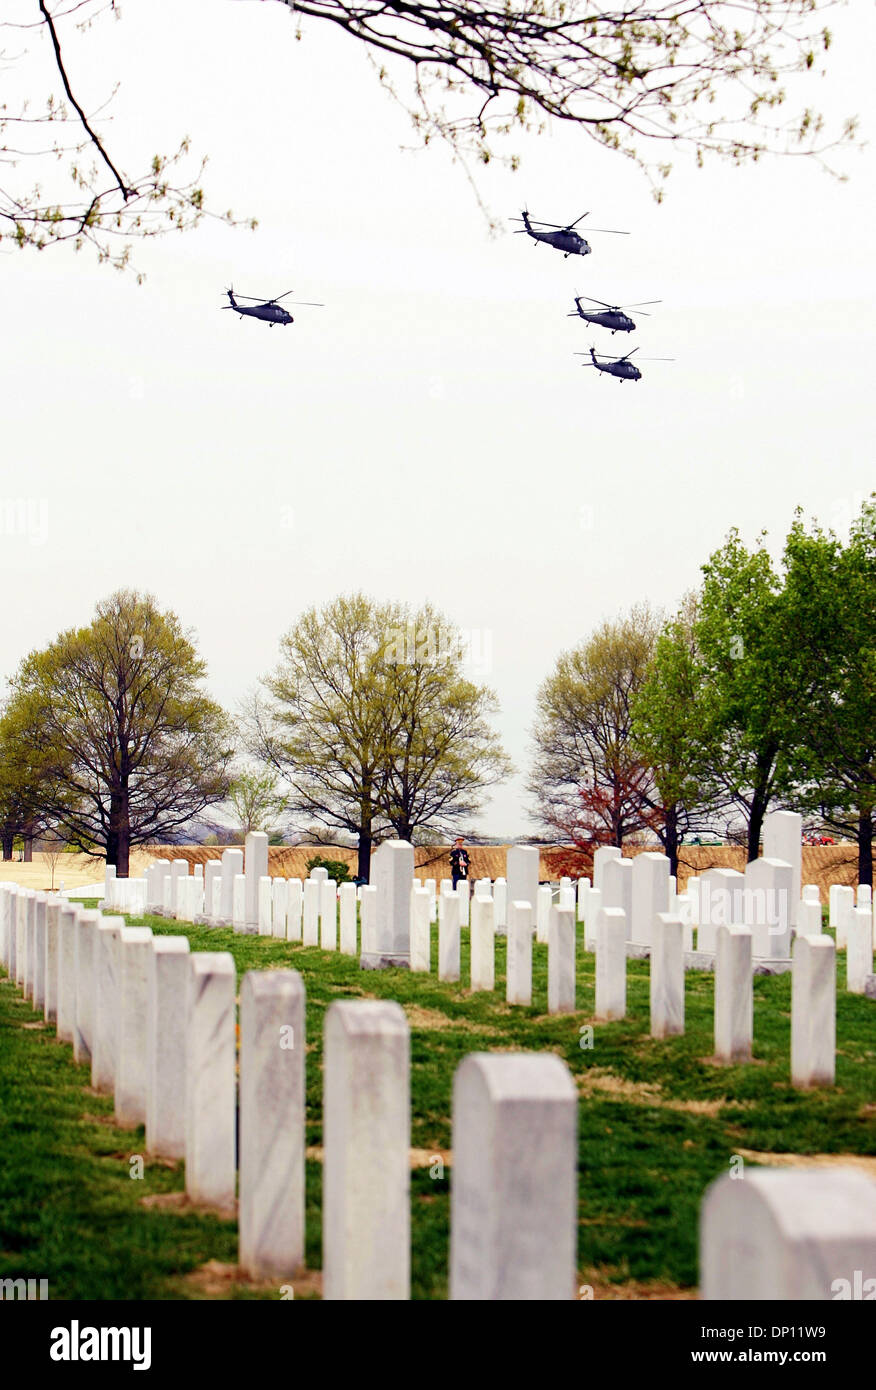 Apr 12, 2006; Washington, DC, Stati Uniti d'America; quattro elicotteri in 'missing uomo formazione", sorvolare durante il funerale di Sgt. William E. Dillender nel Cimitero Nazionale di Arlington, il 12 aprile 2006. Il Dipartimento della Difesa POW/Personale mancante Office ha annunciato il 14 febbraio 2006, che i resti del Magg. Jack L. Barker, Waycross, Fa.; Capt. John F. Dugan, Roselle, N.J.; Sgt. William Foto Stock